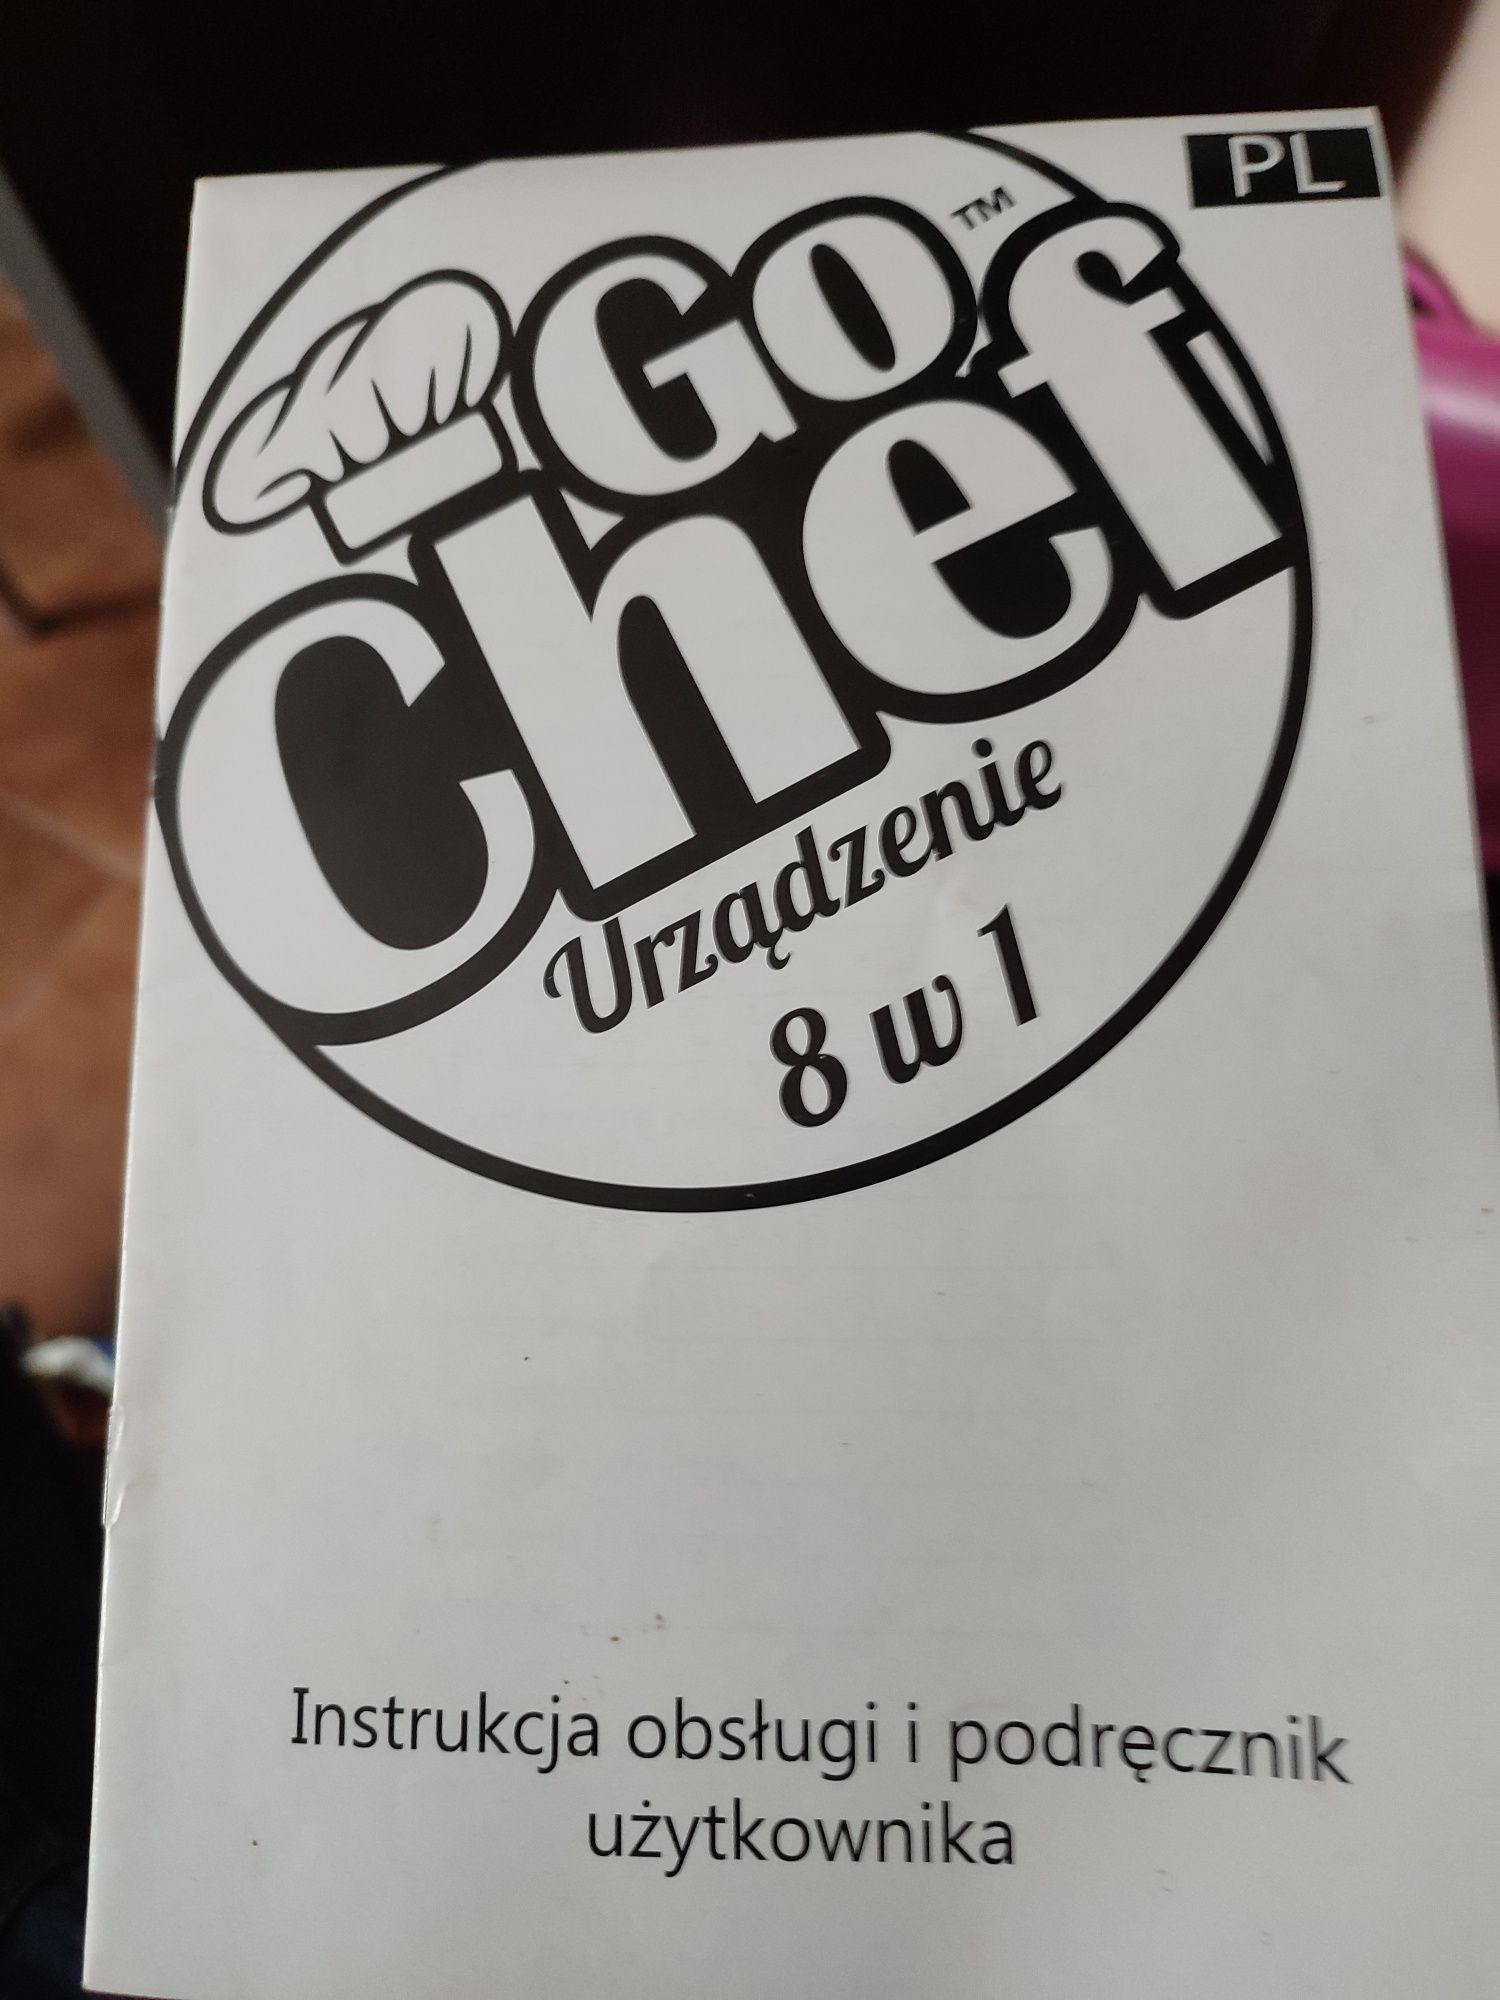 Urządzenie Go Chef 8w1